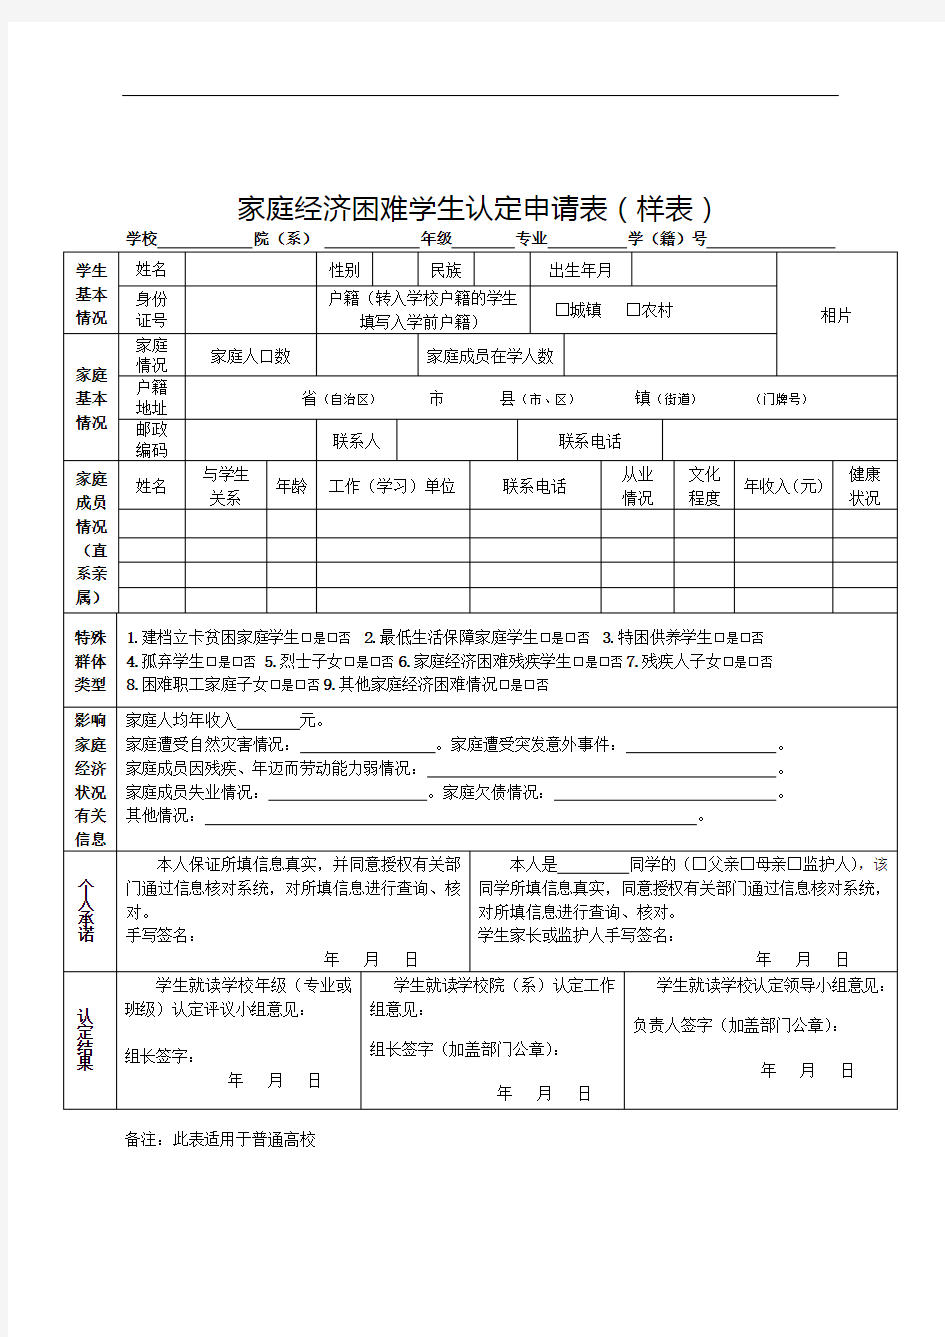 山西省家庭经济困难学生认定申请表(2)